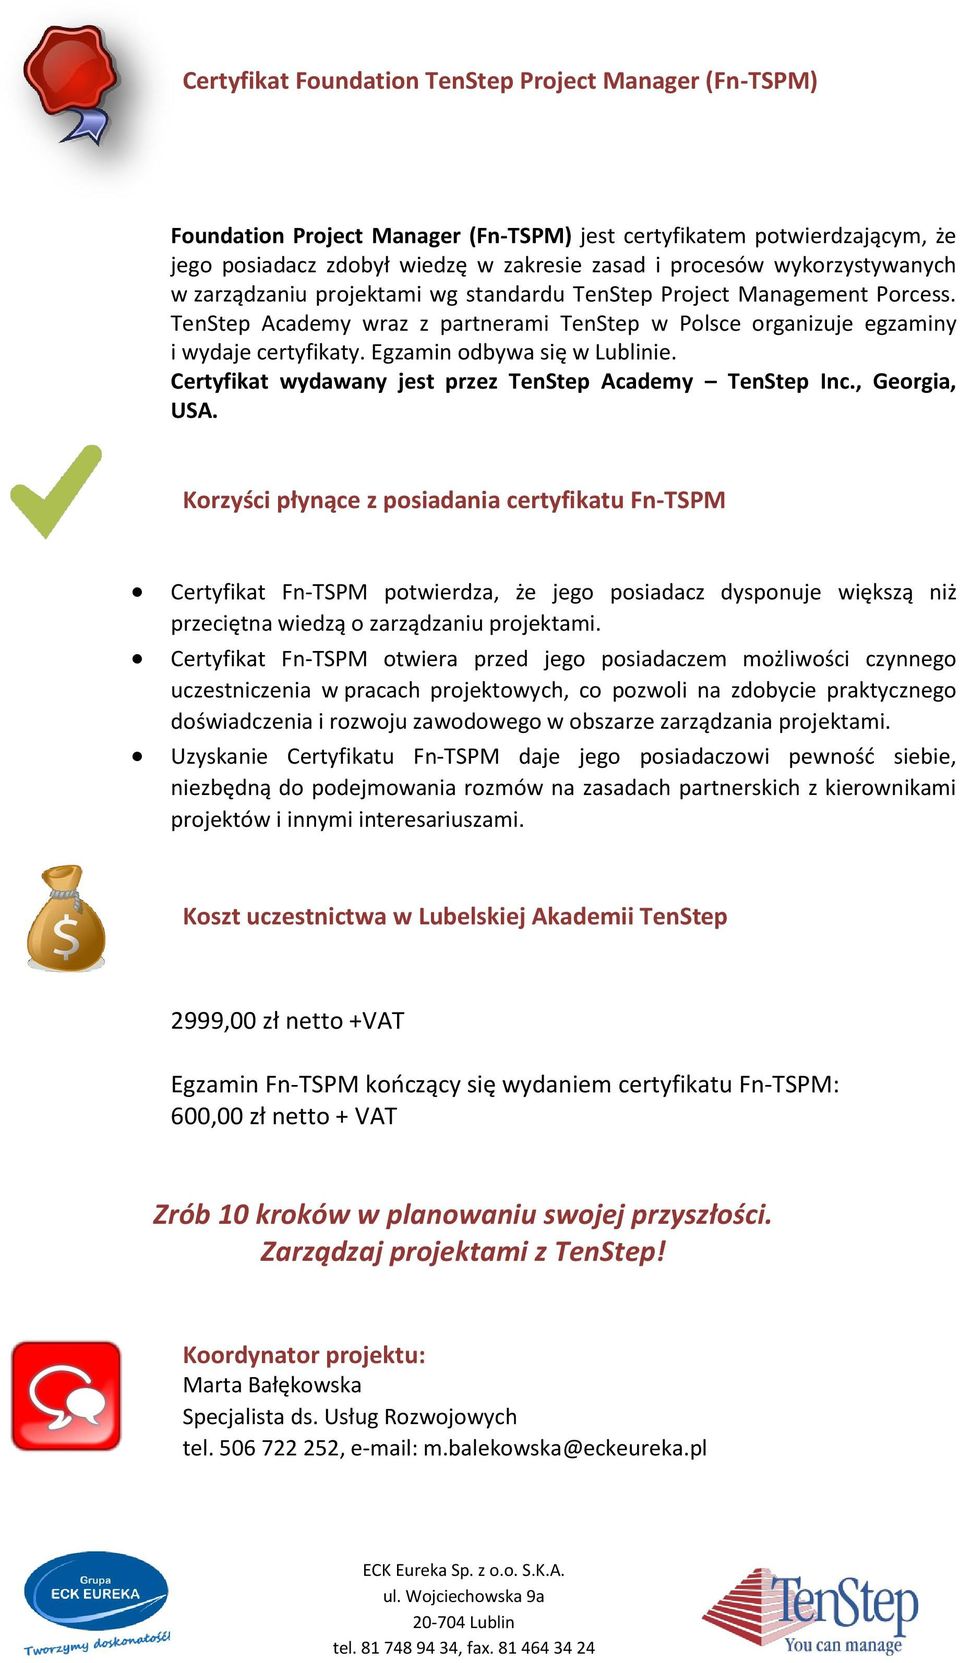 Egzamin odbywa się w Lublinie. Certyfikat wydawany jest przez TenStep Academy TenStep Inc., Georgia, USA.